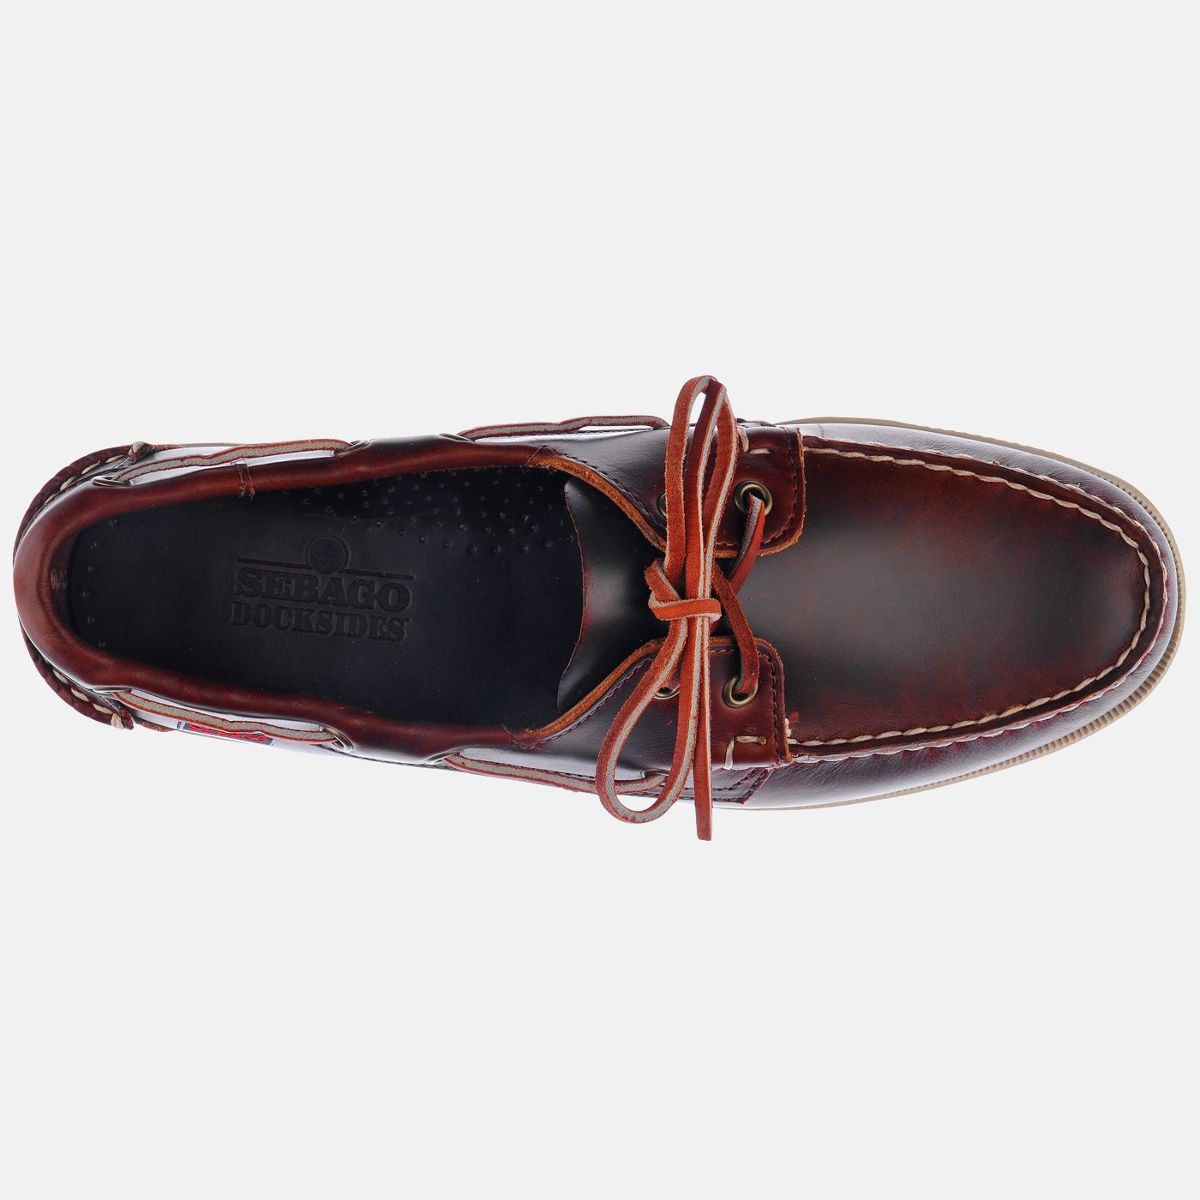 Sebago Docksides bootschoen heren brown oiled waxy leather, maat EU 43 (US 9)